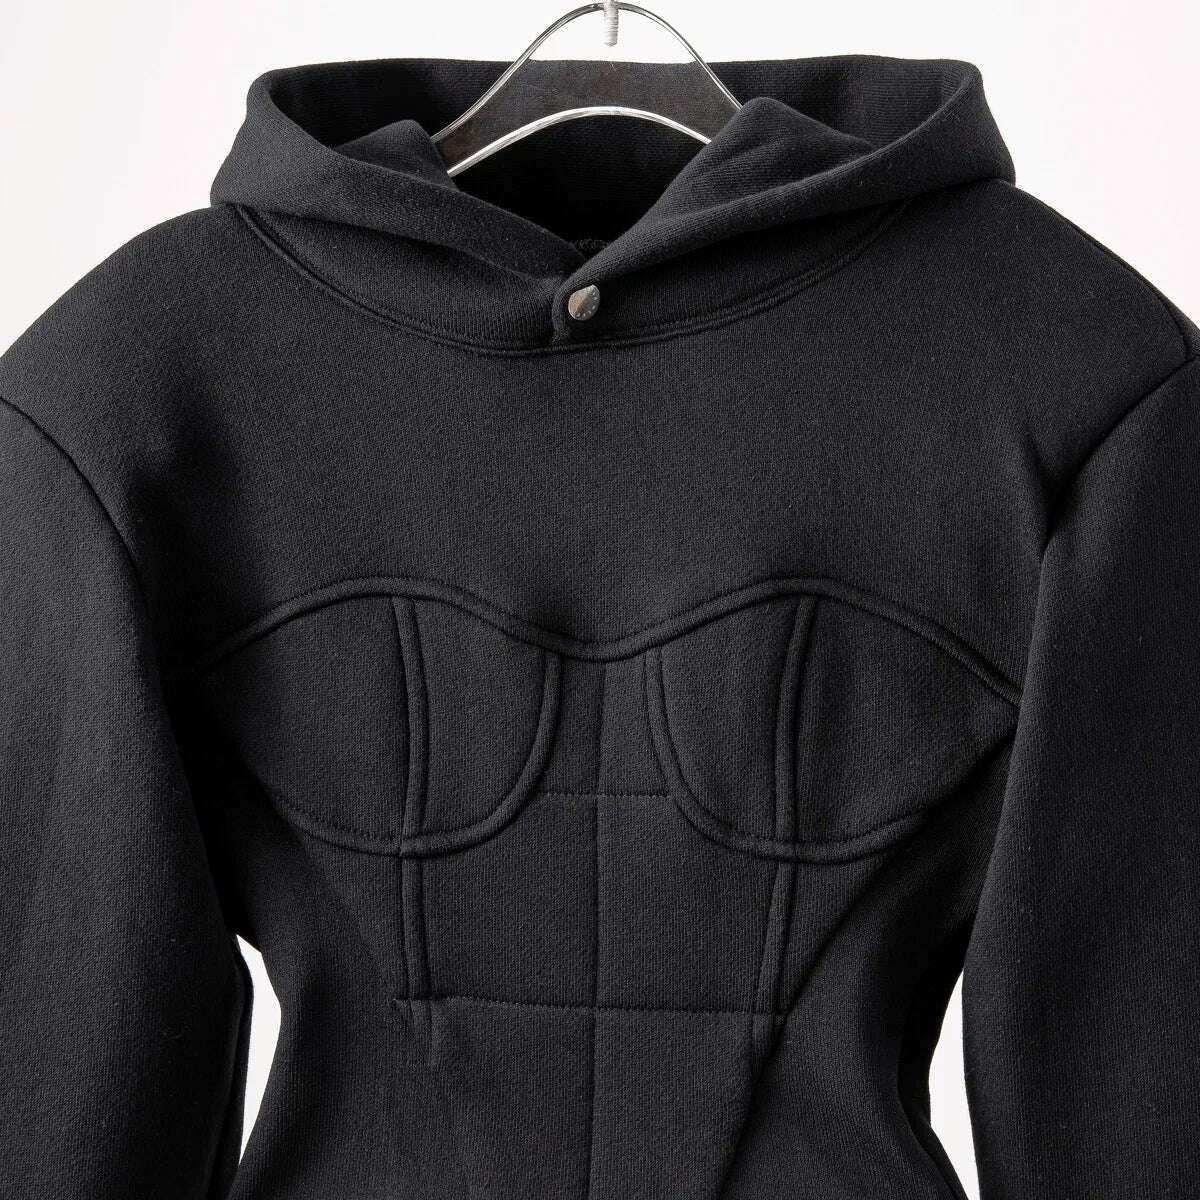 KIMLUD, Yuerwang Women Hoodies Sweatshirt Patchwork Y2k Cropped Hoodies Crop Top Vintage Casual Short Women Sweatshirt 2022 Pullover, KIMLUD Women's Clothes